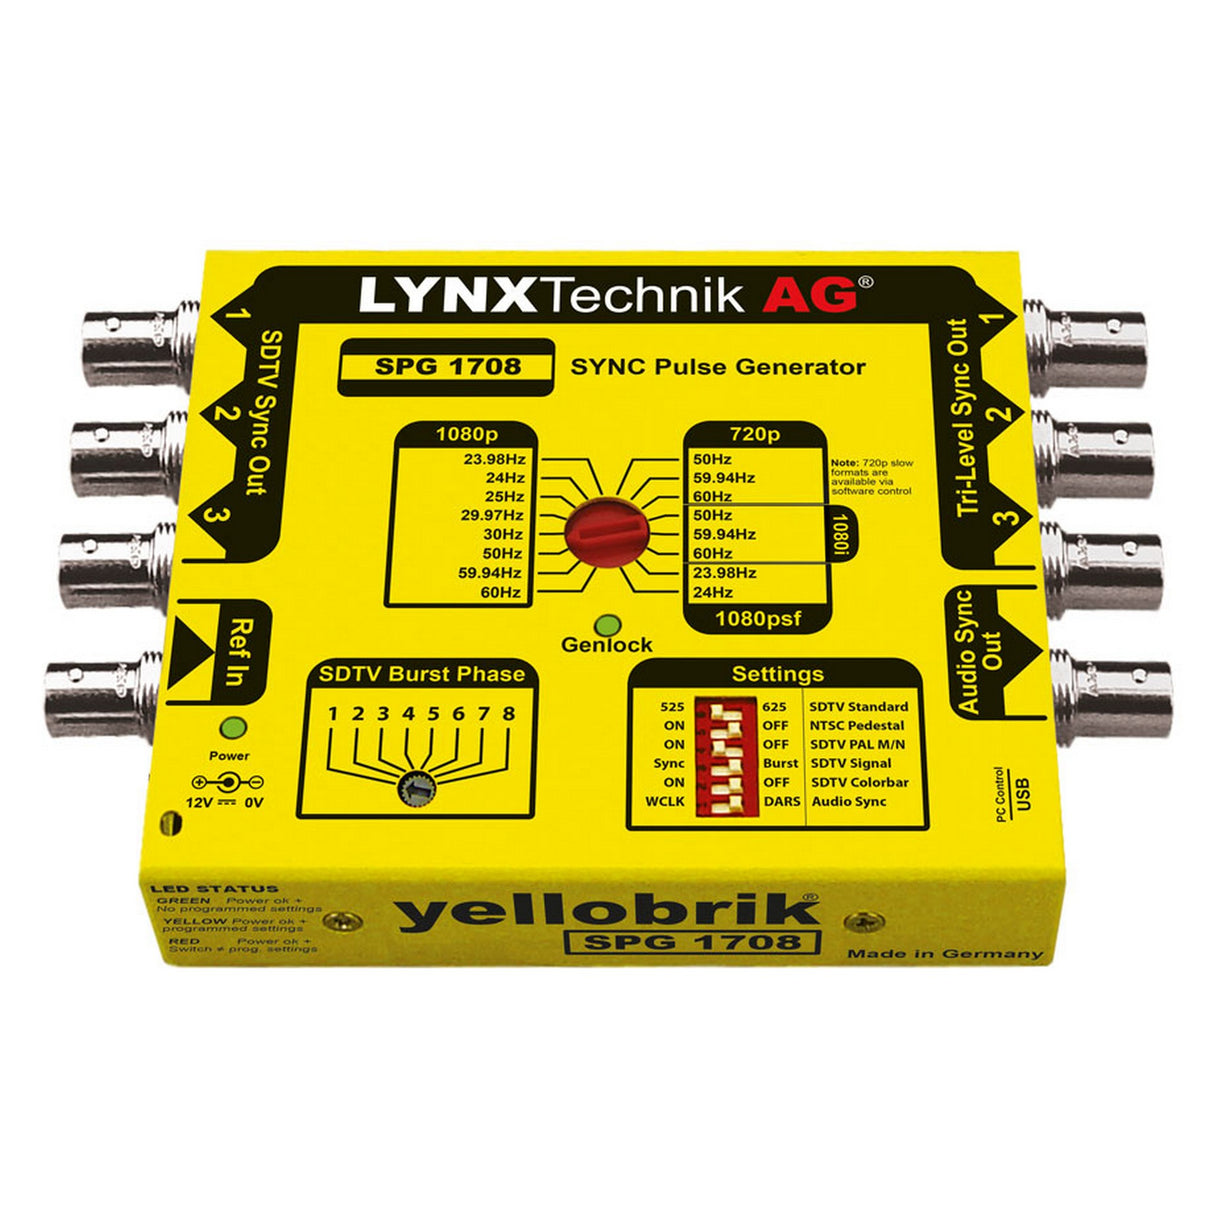 LYNX Technik SPG-1708 Tri/Bi-Level Sync Pulse Generator with Genlock